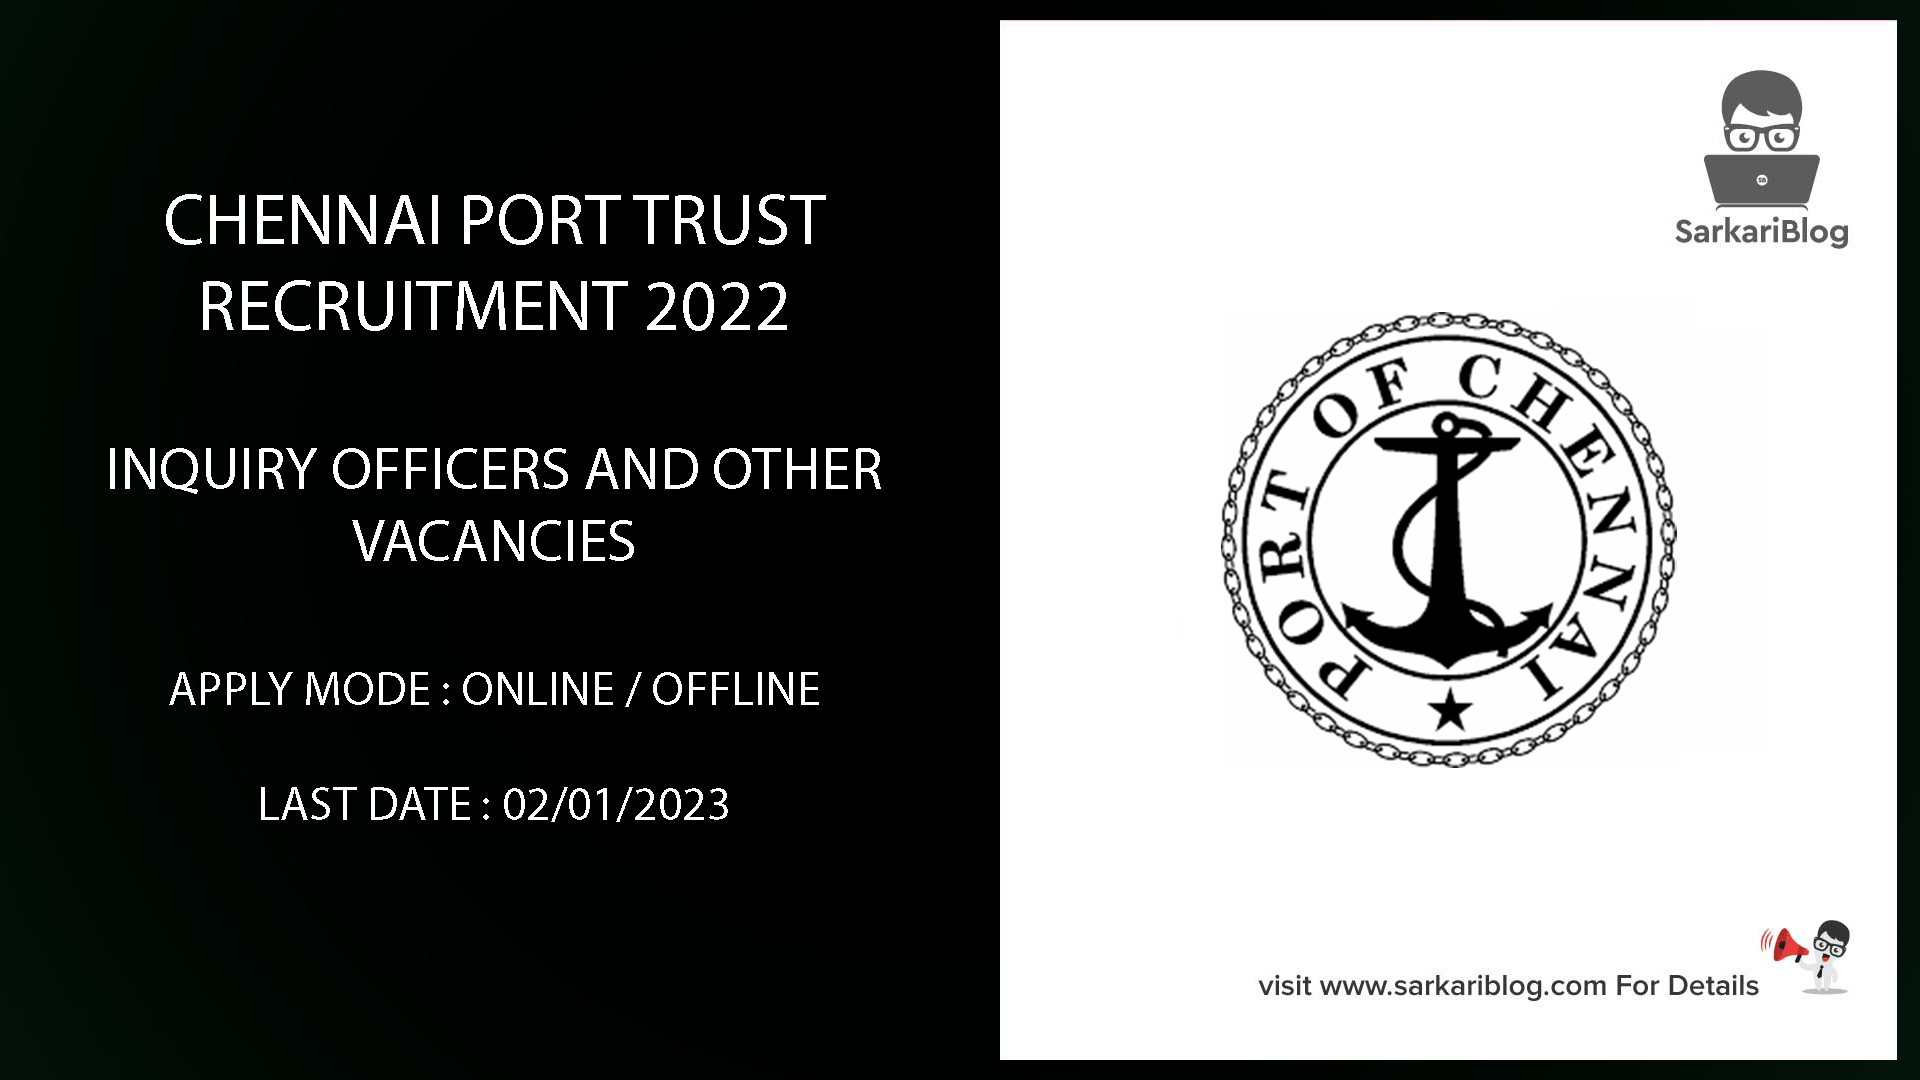 Chennai Port Trust Recruitment 2022